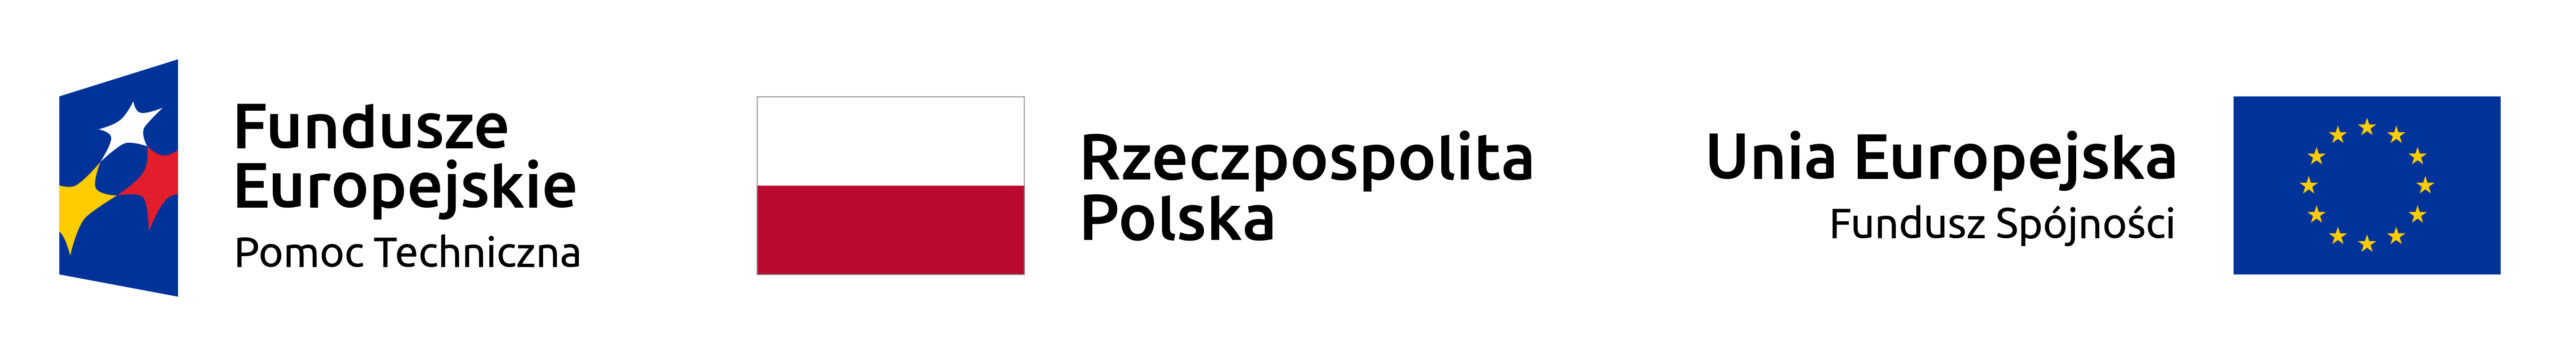 logotyp funduszy europejskich, flagi polski i unii europejskiej